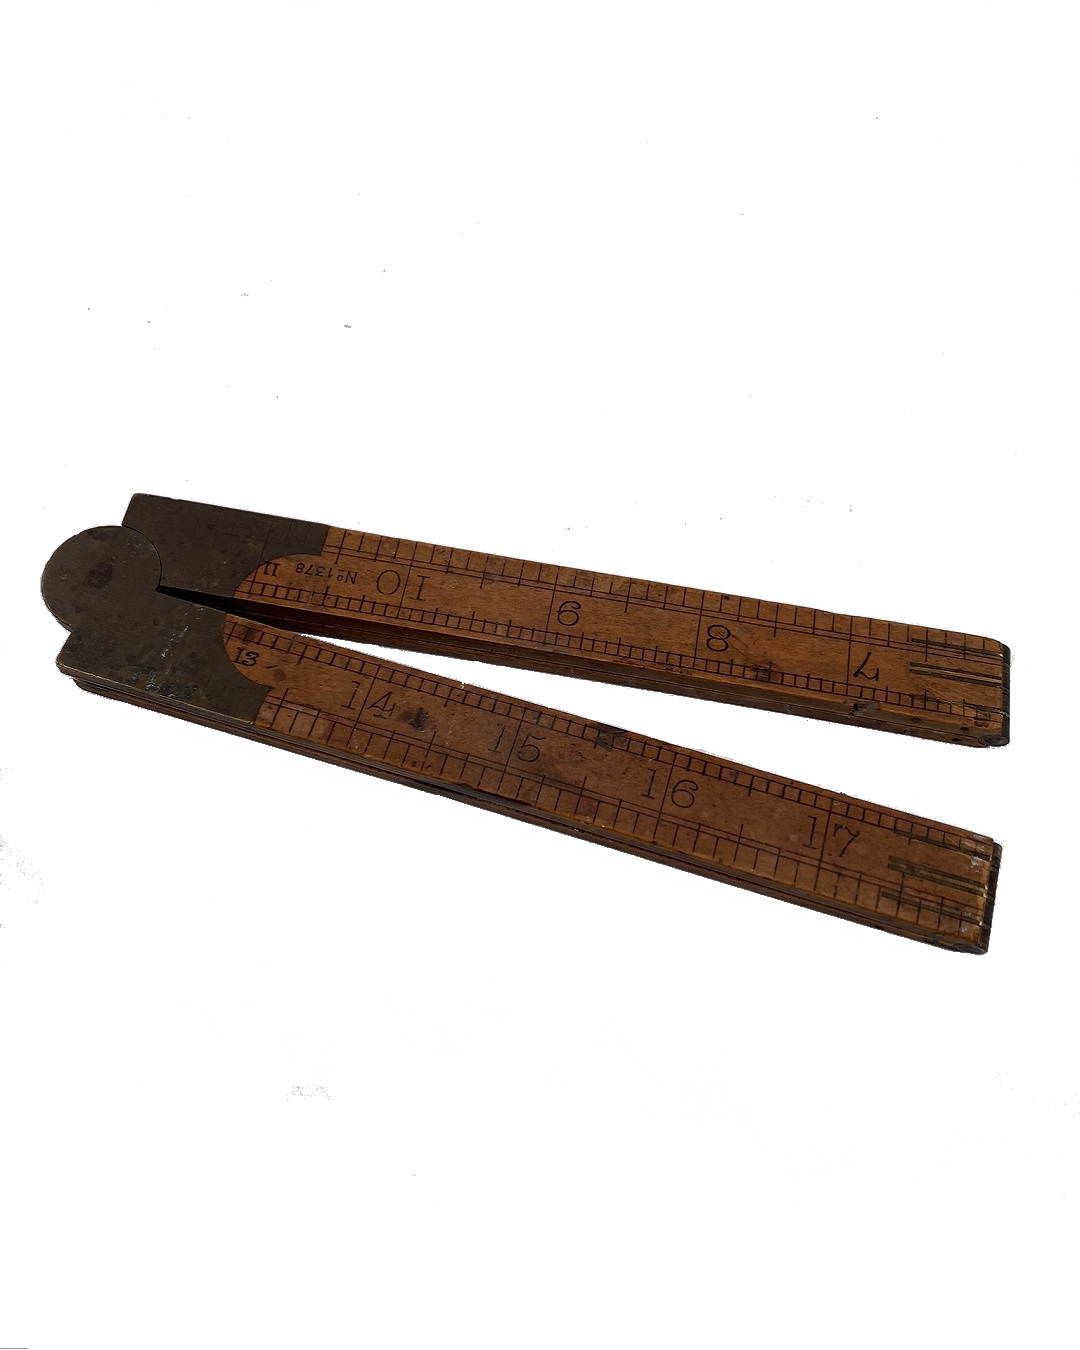 Old vintage wooden ruler